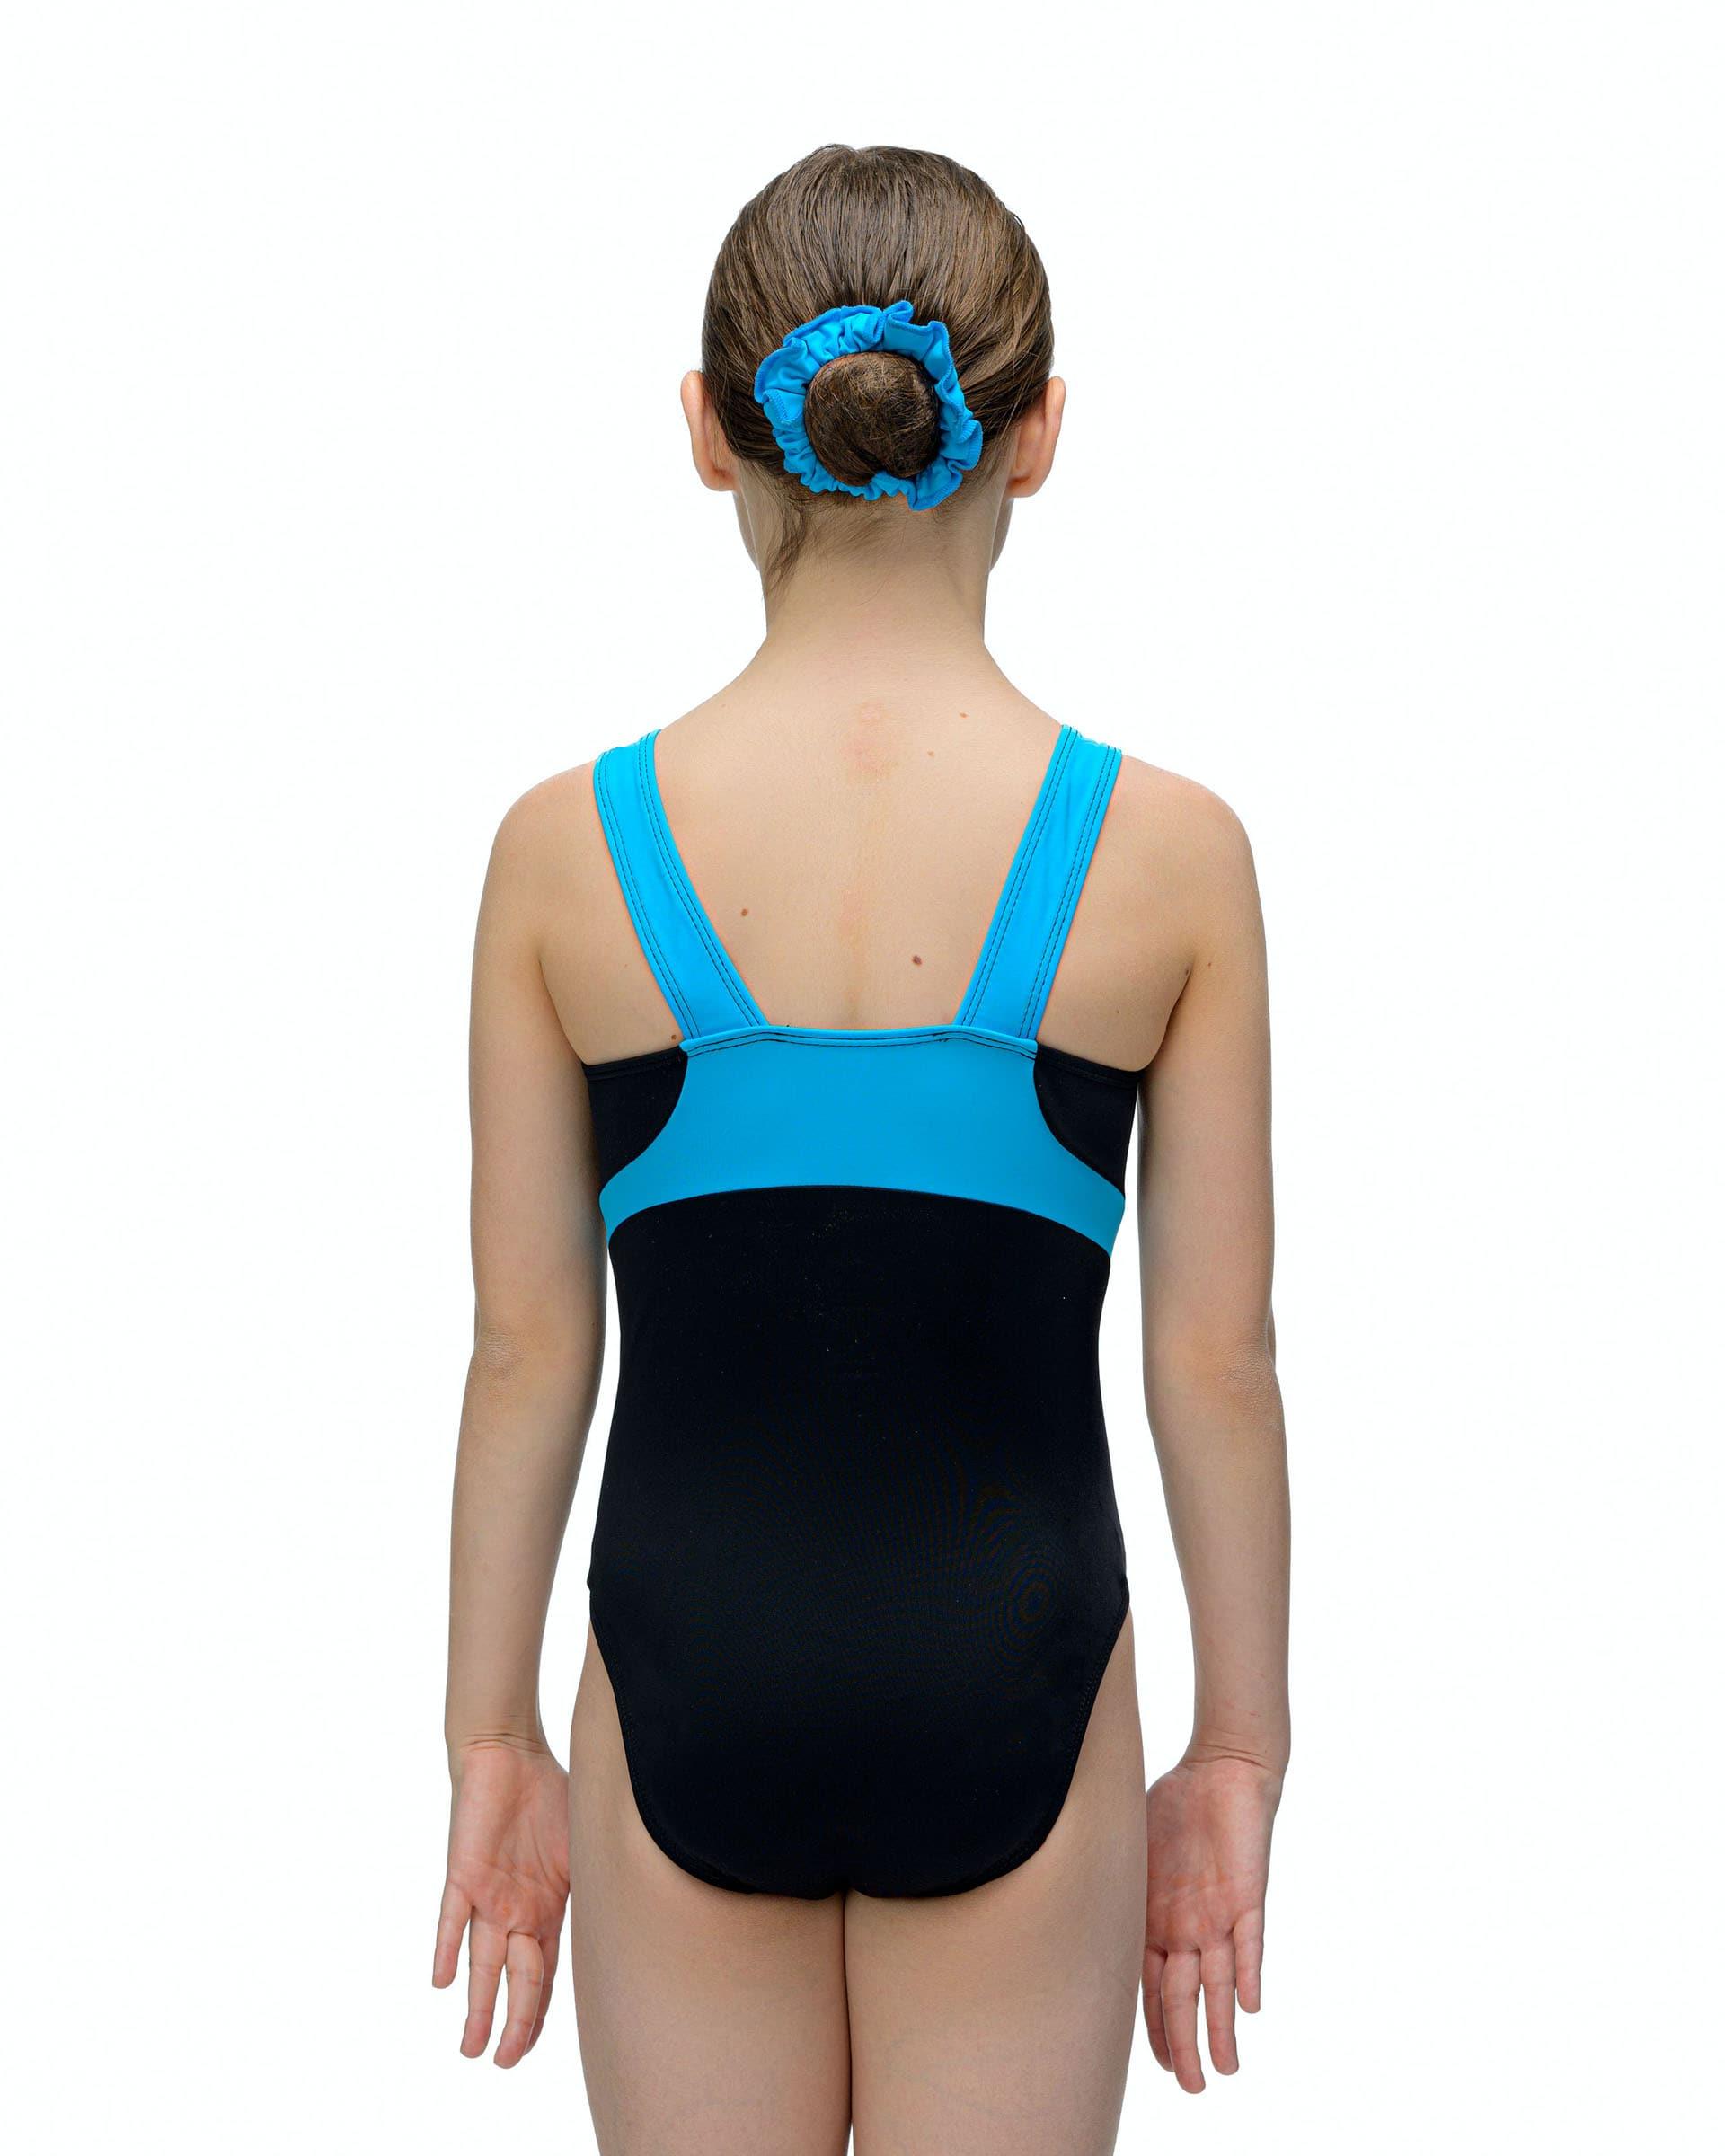 Купальник для спортивной гимнастики GK Elite 4898 без рукава черный с голубыми полосками